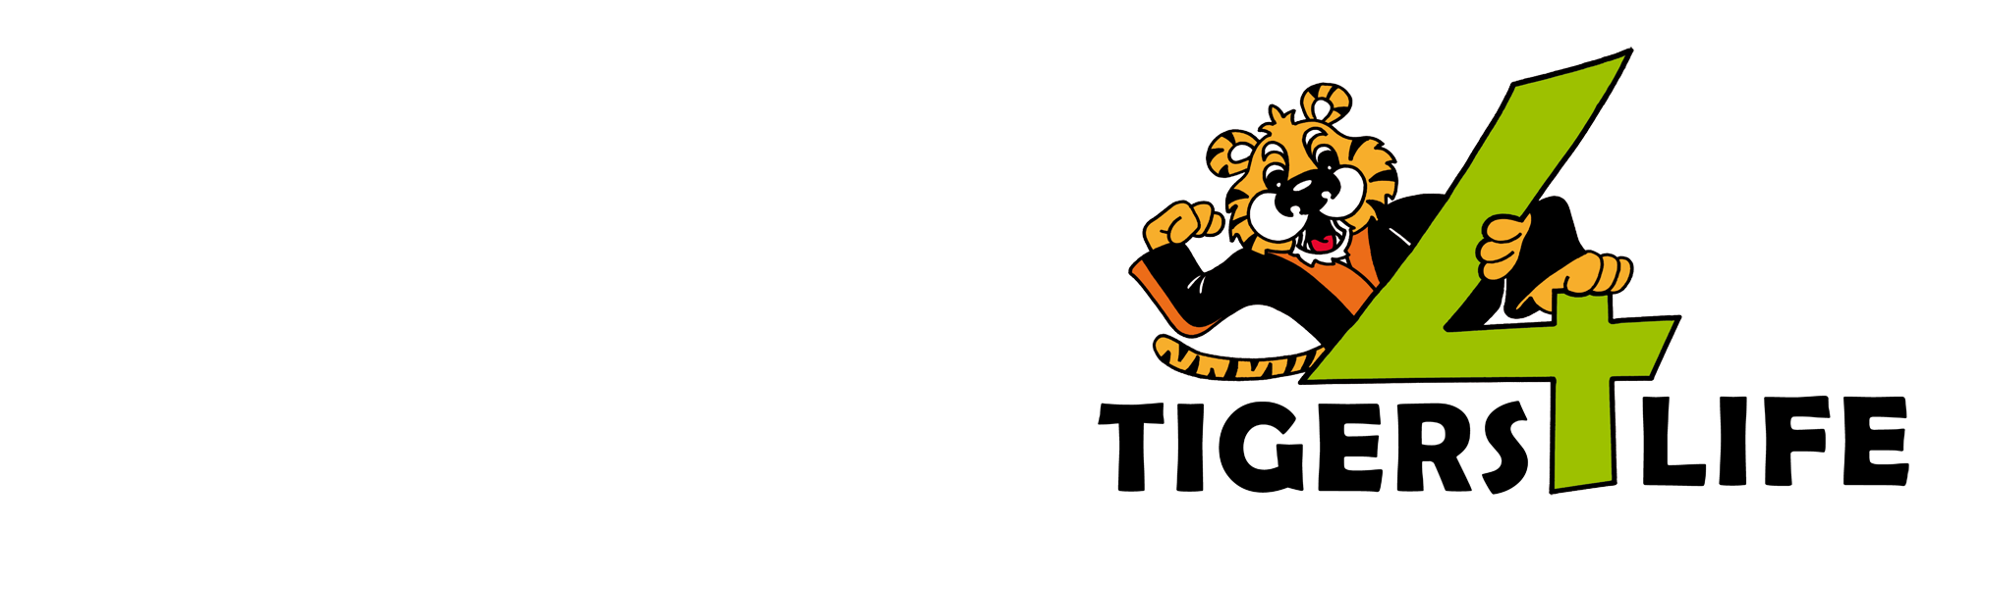 Welkom bij Tigers4life